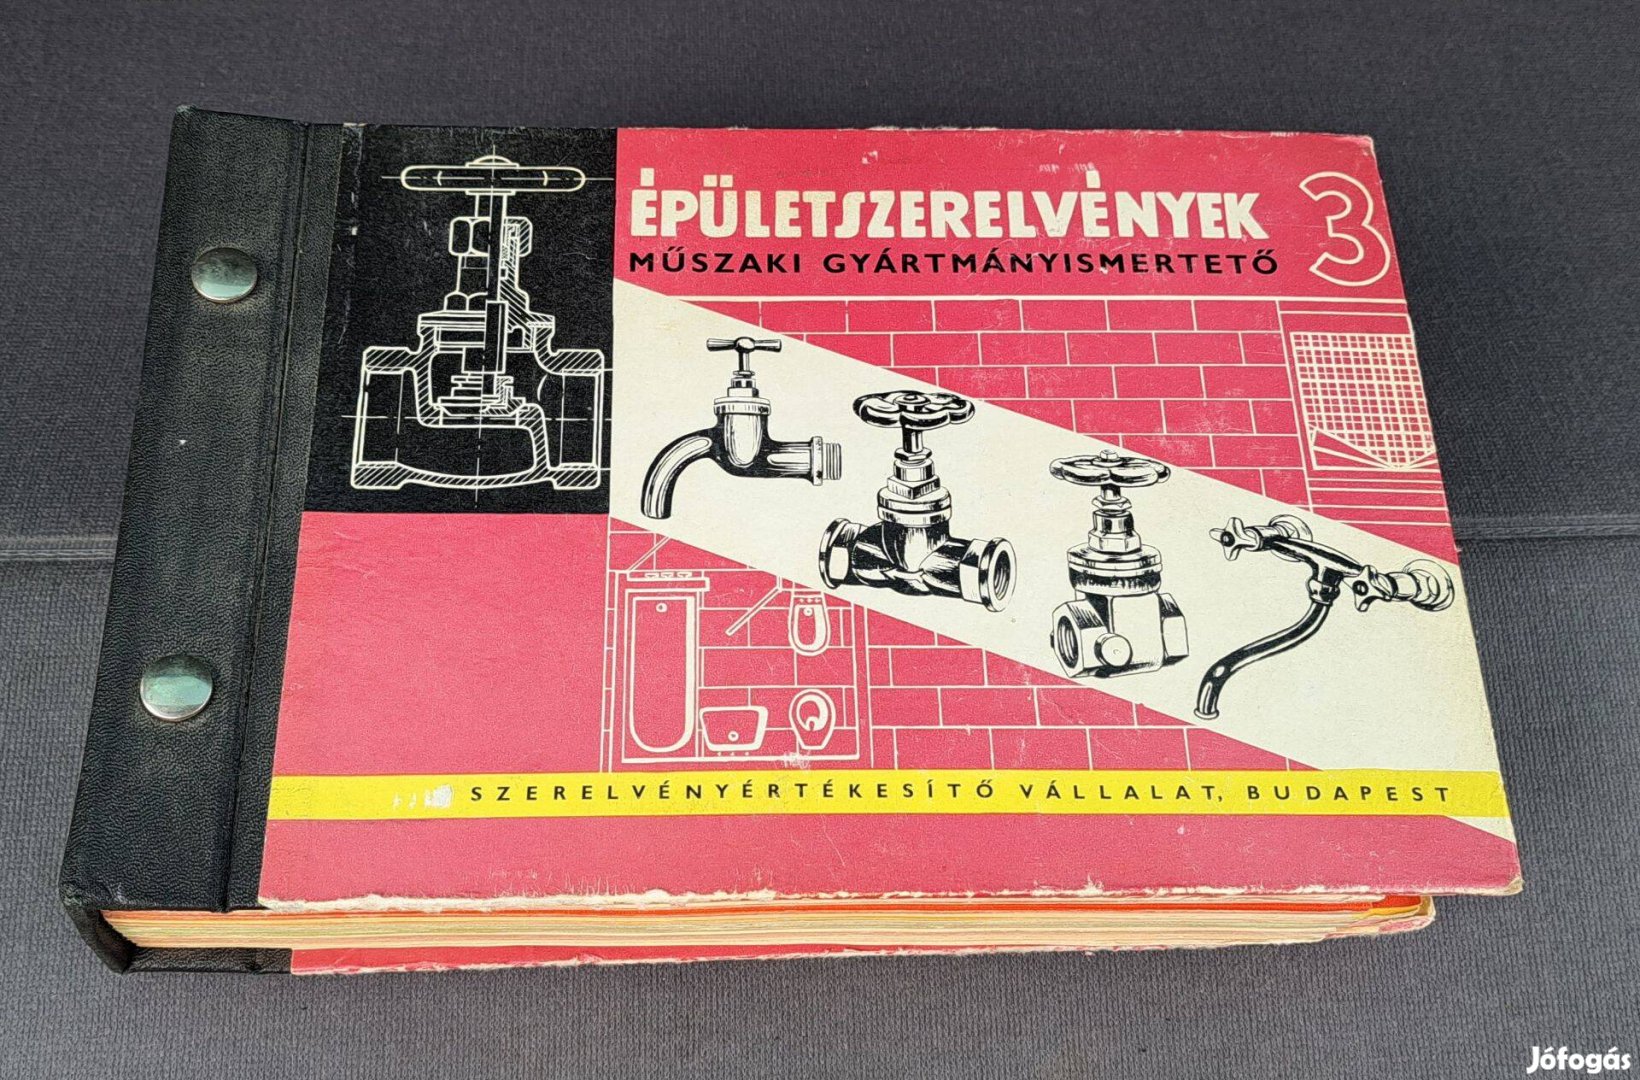 Épületszerelvények műszaki gyártmányismertető 1966